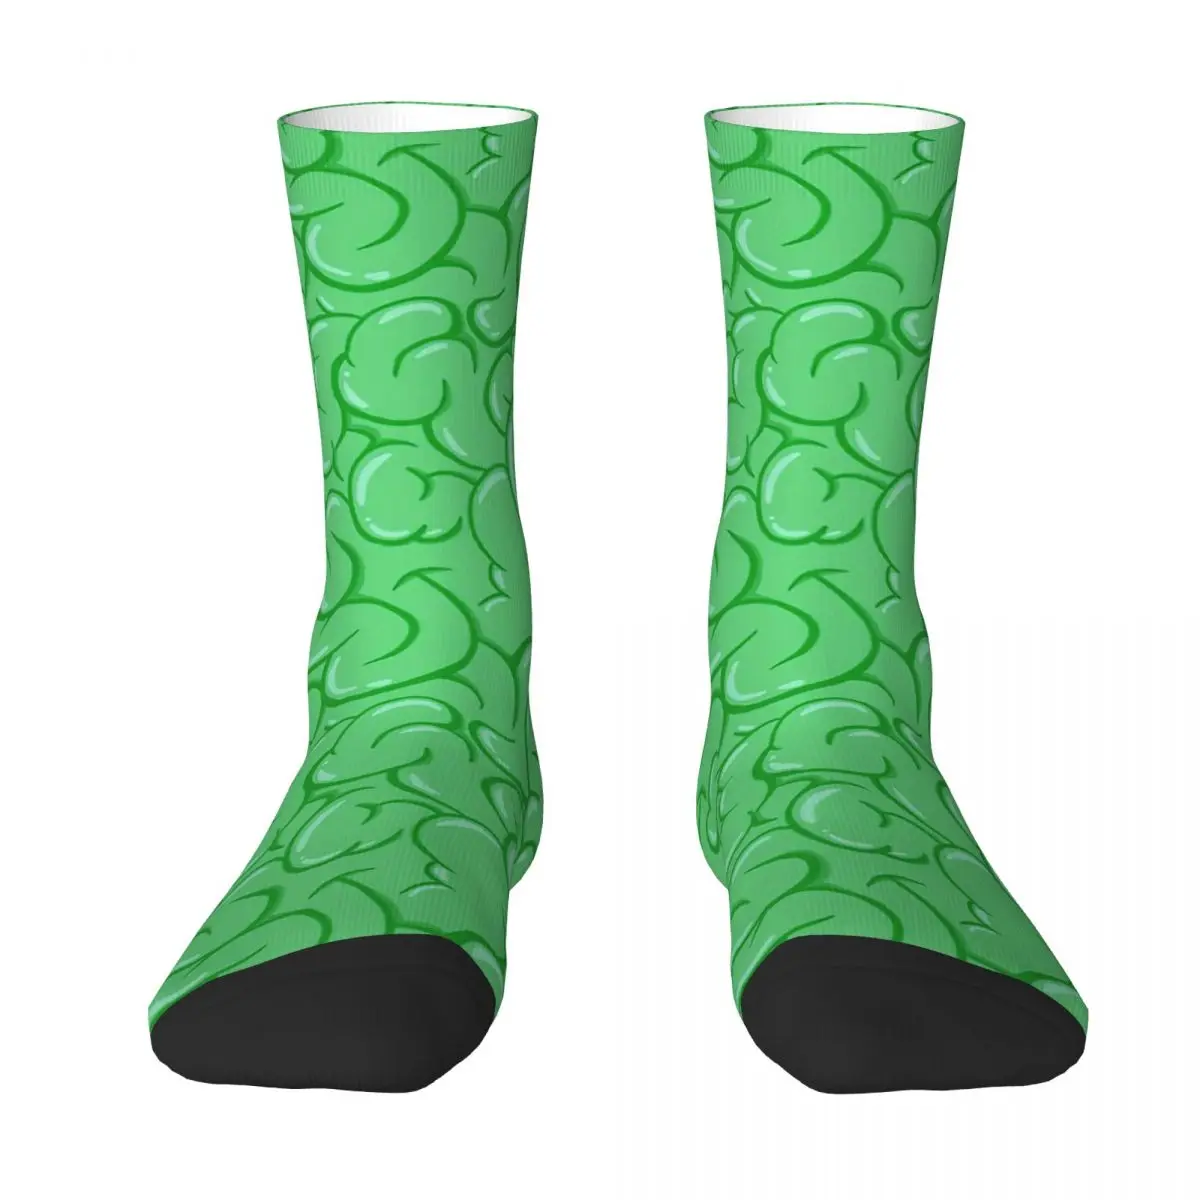 Zombie's Green Brain Pattern Adult Socks,Unisex socks,men Socks women Socks dillinger cocain in my brain the anthology 2 cd